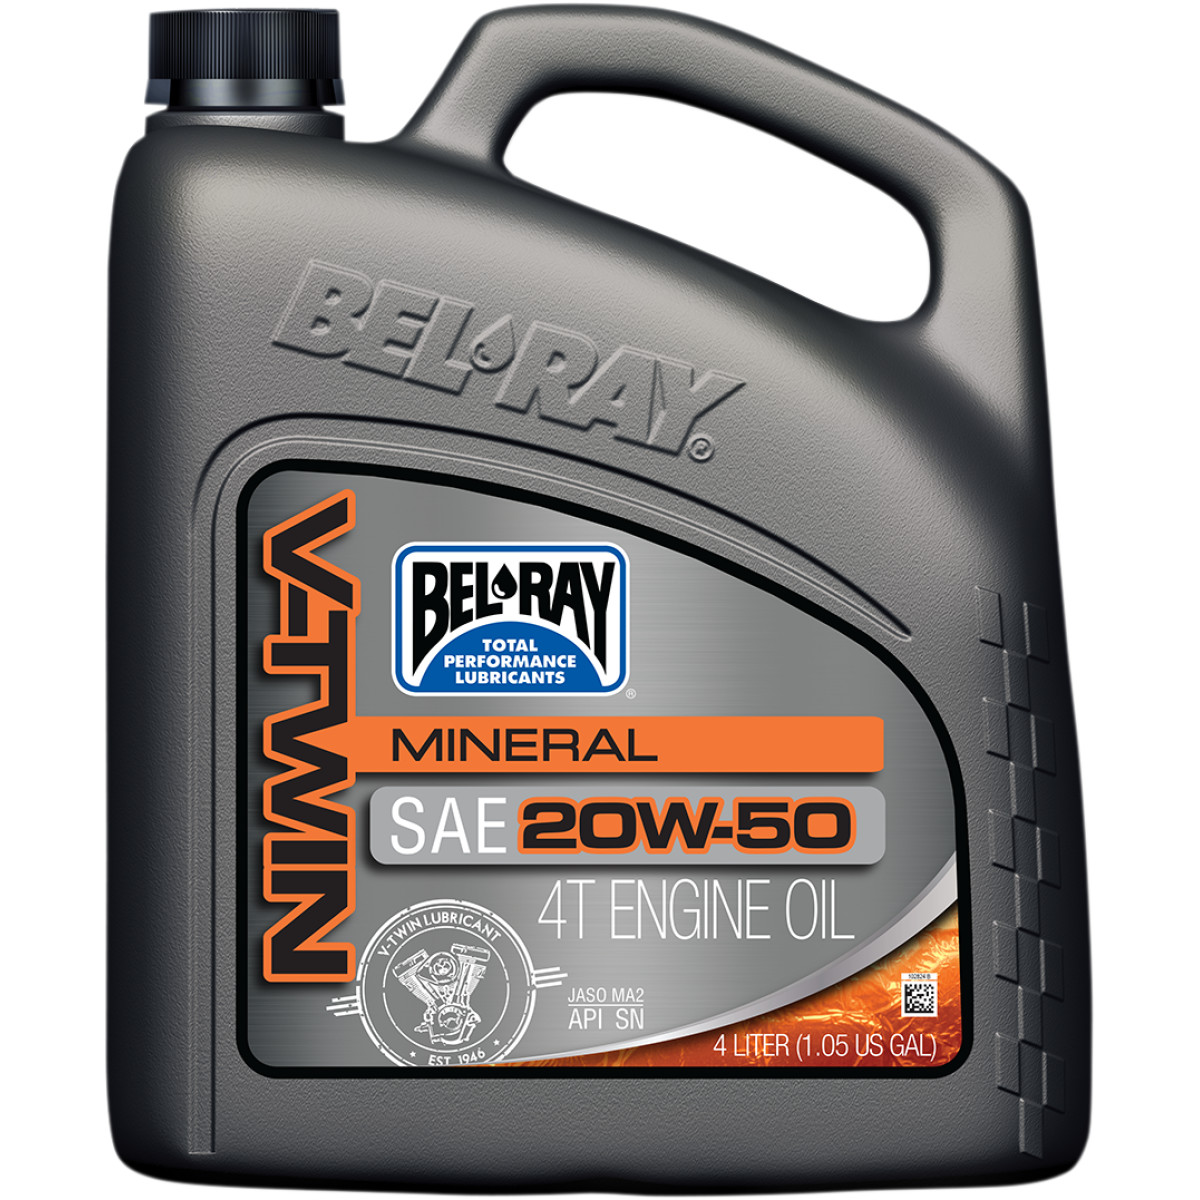 Bel-Ray V-Twin Motorolja Mineral SAE 20W50, 4L